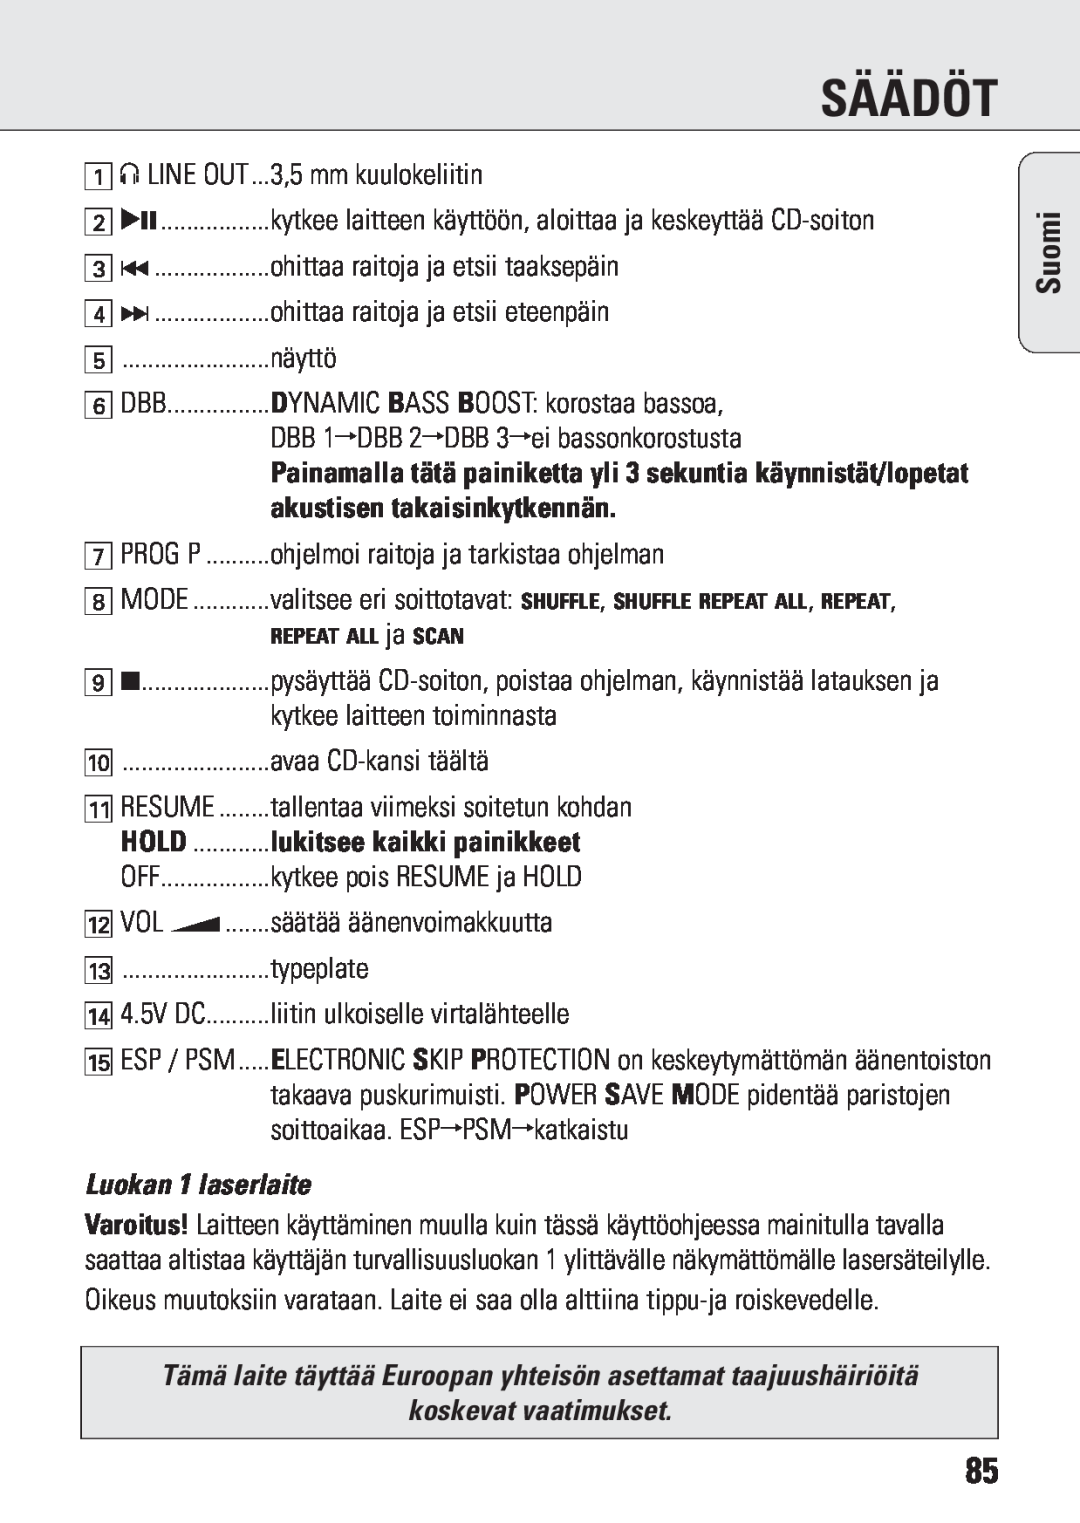 Philips ACT 7583 manual akustisen takaisinkytkennän, Luokan 1 laserlaite, koskevat vaatimukset, Säädöt, Suomi 